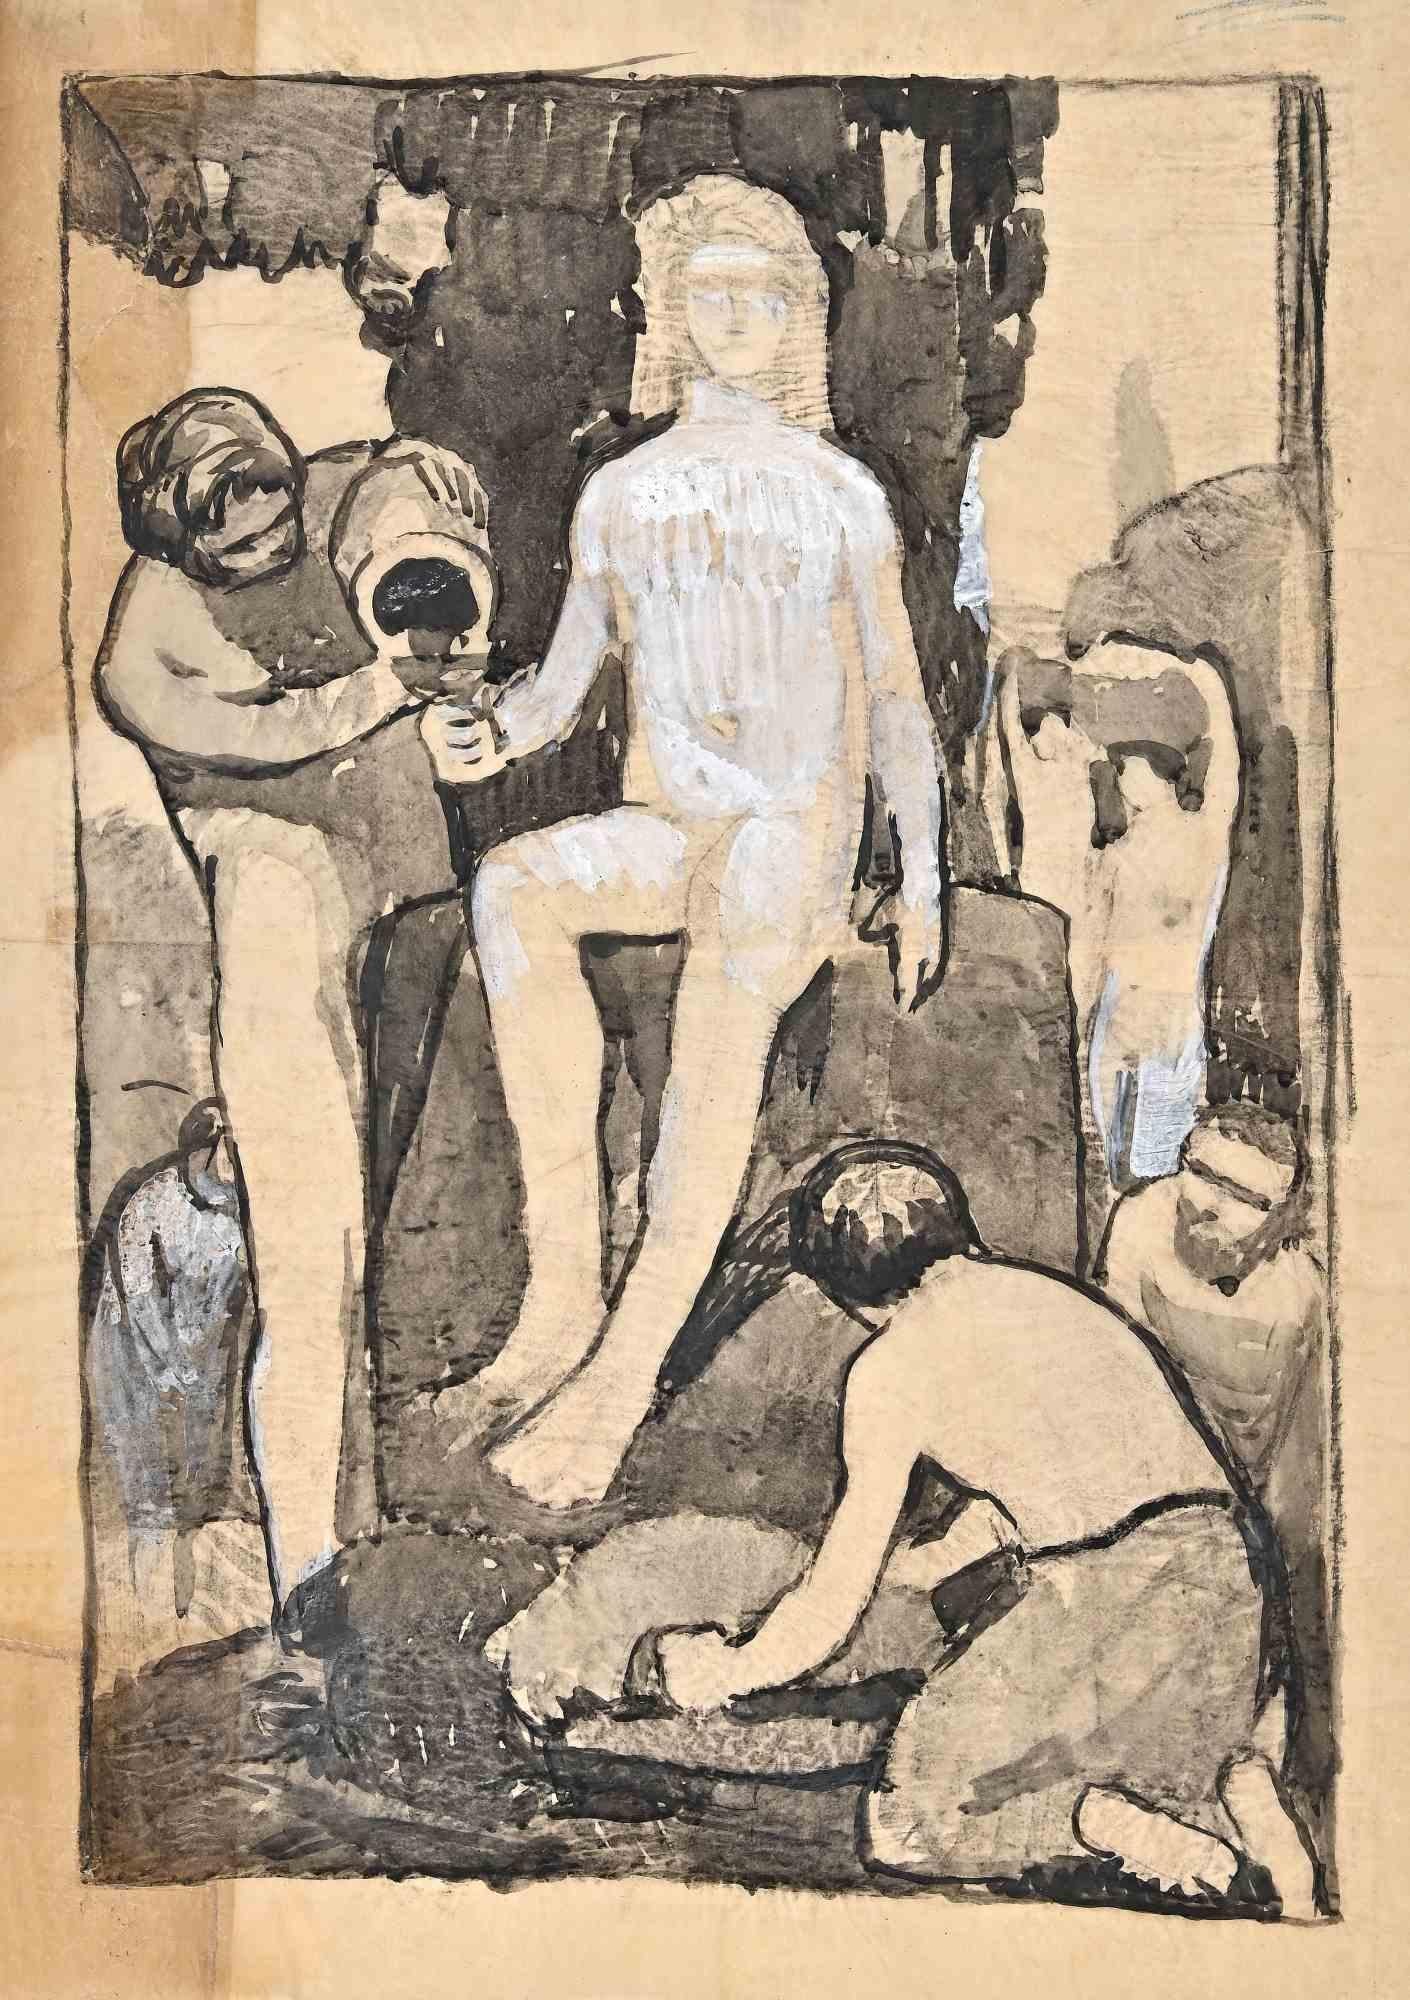 Die ländliche Szene ist ein Kunstwerk von Gustave Bourgogne aus den 1940er Jahren. 

Bleistift und Aquarell, Tinte und Bleiweiß auf Papier. 

48 x 41 cm.

Gute Bedingungen!

 

Gustave Bourgogne (1888-1968), französischer Maler, geboren 1888 in